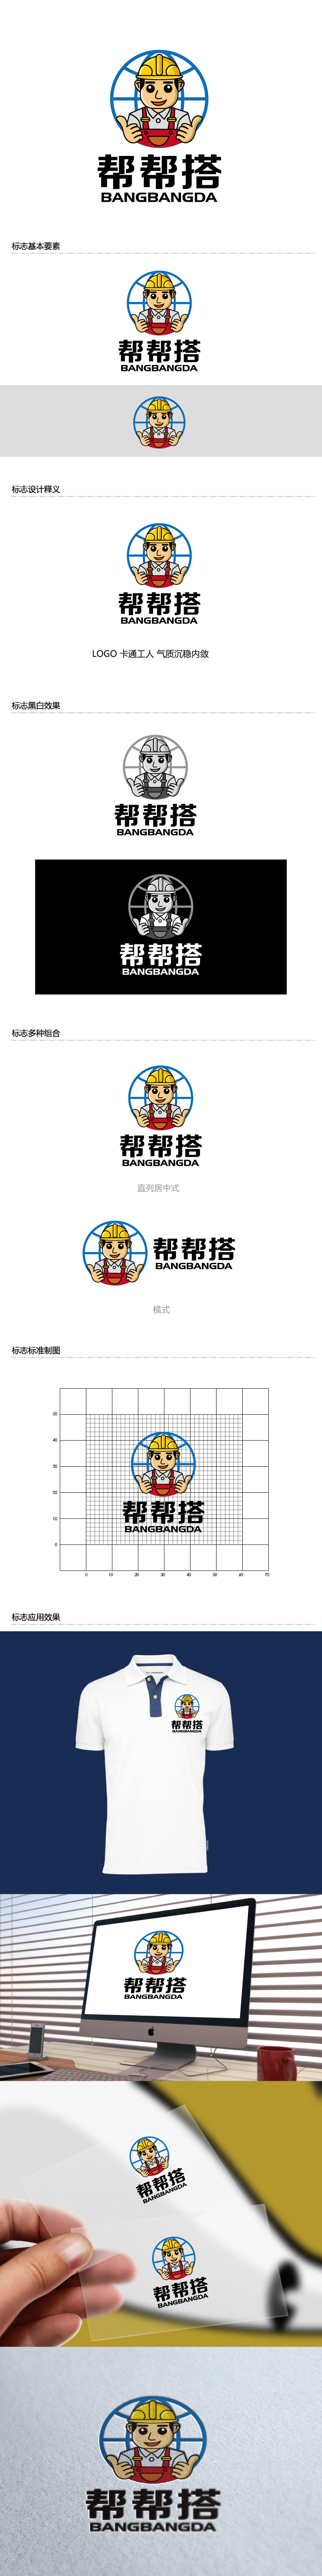 张俊的帮帮搭展览服务有限公司logo设计